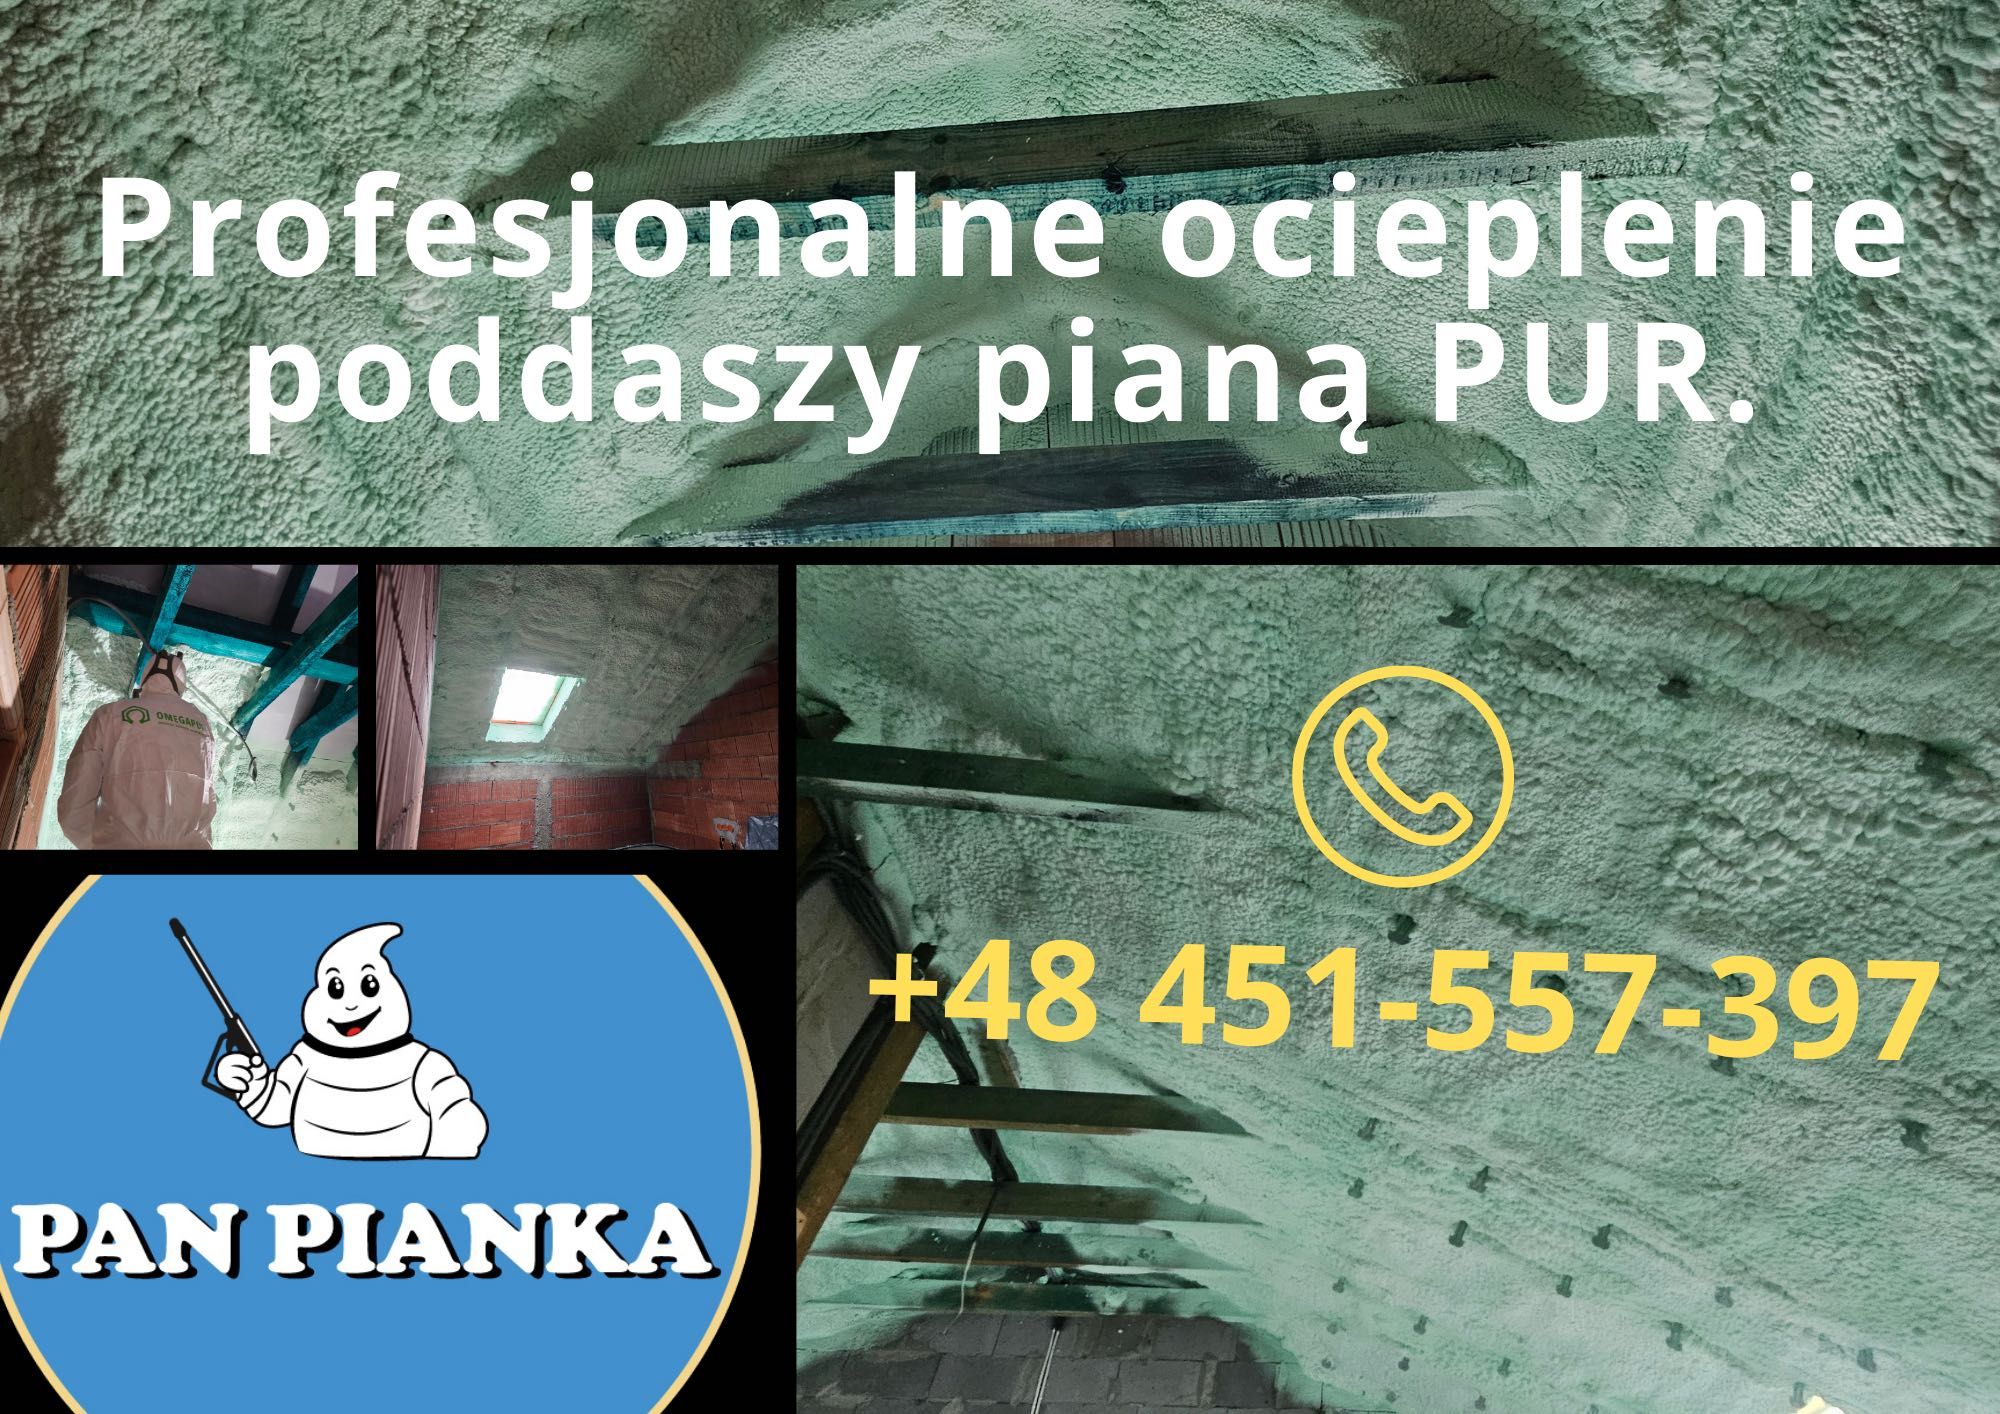 Izolacja pianką PUR od Pan Pianka - specjalna oferta na OLX Promocja